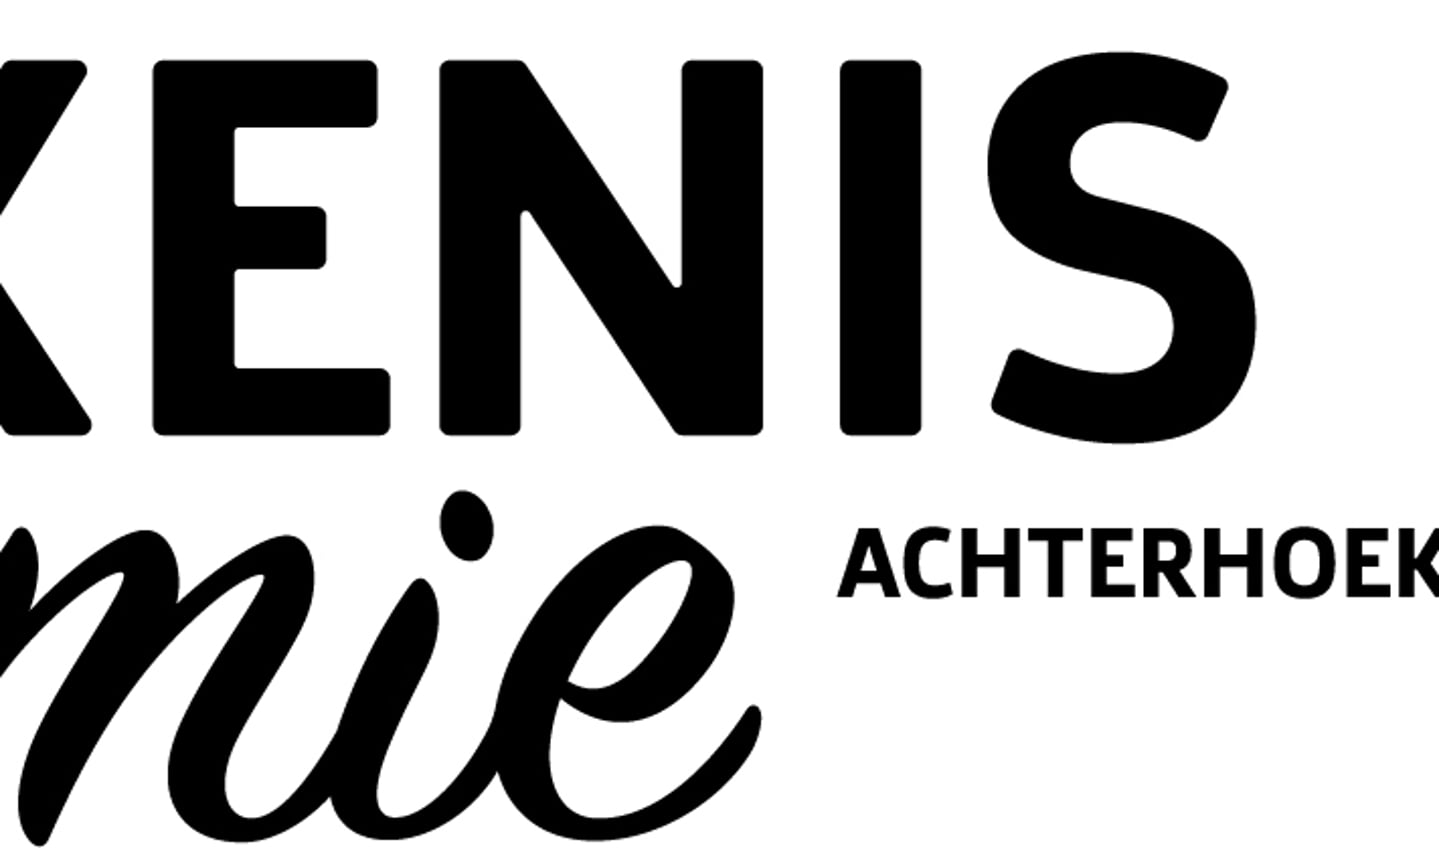 Het logo van Betekeniseconomie Achterhoek. 